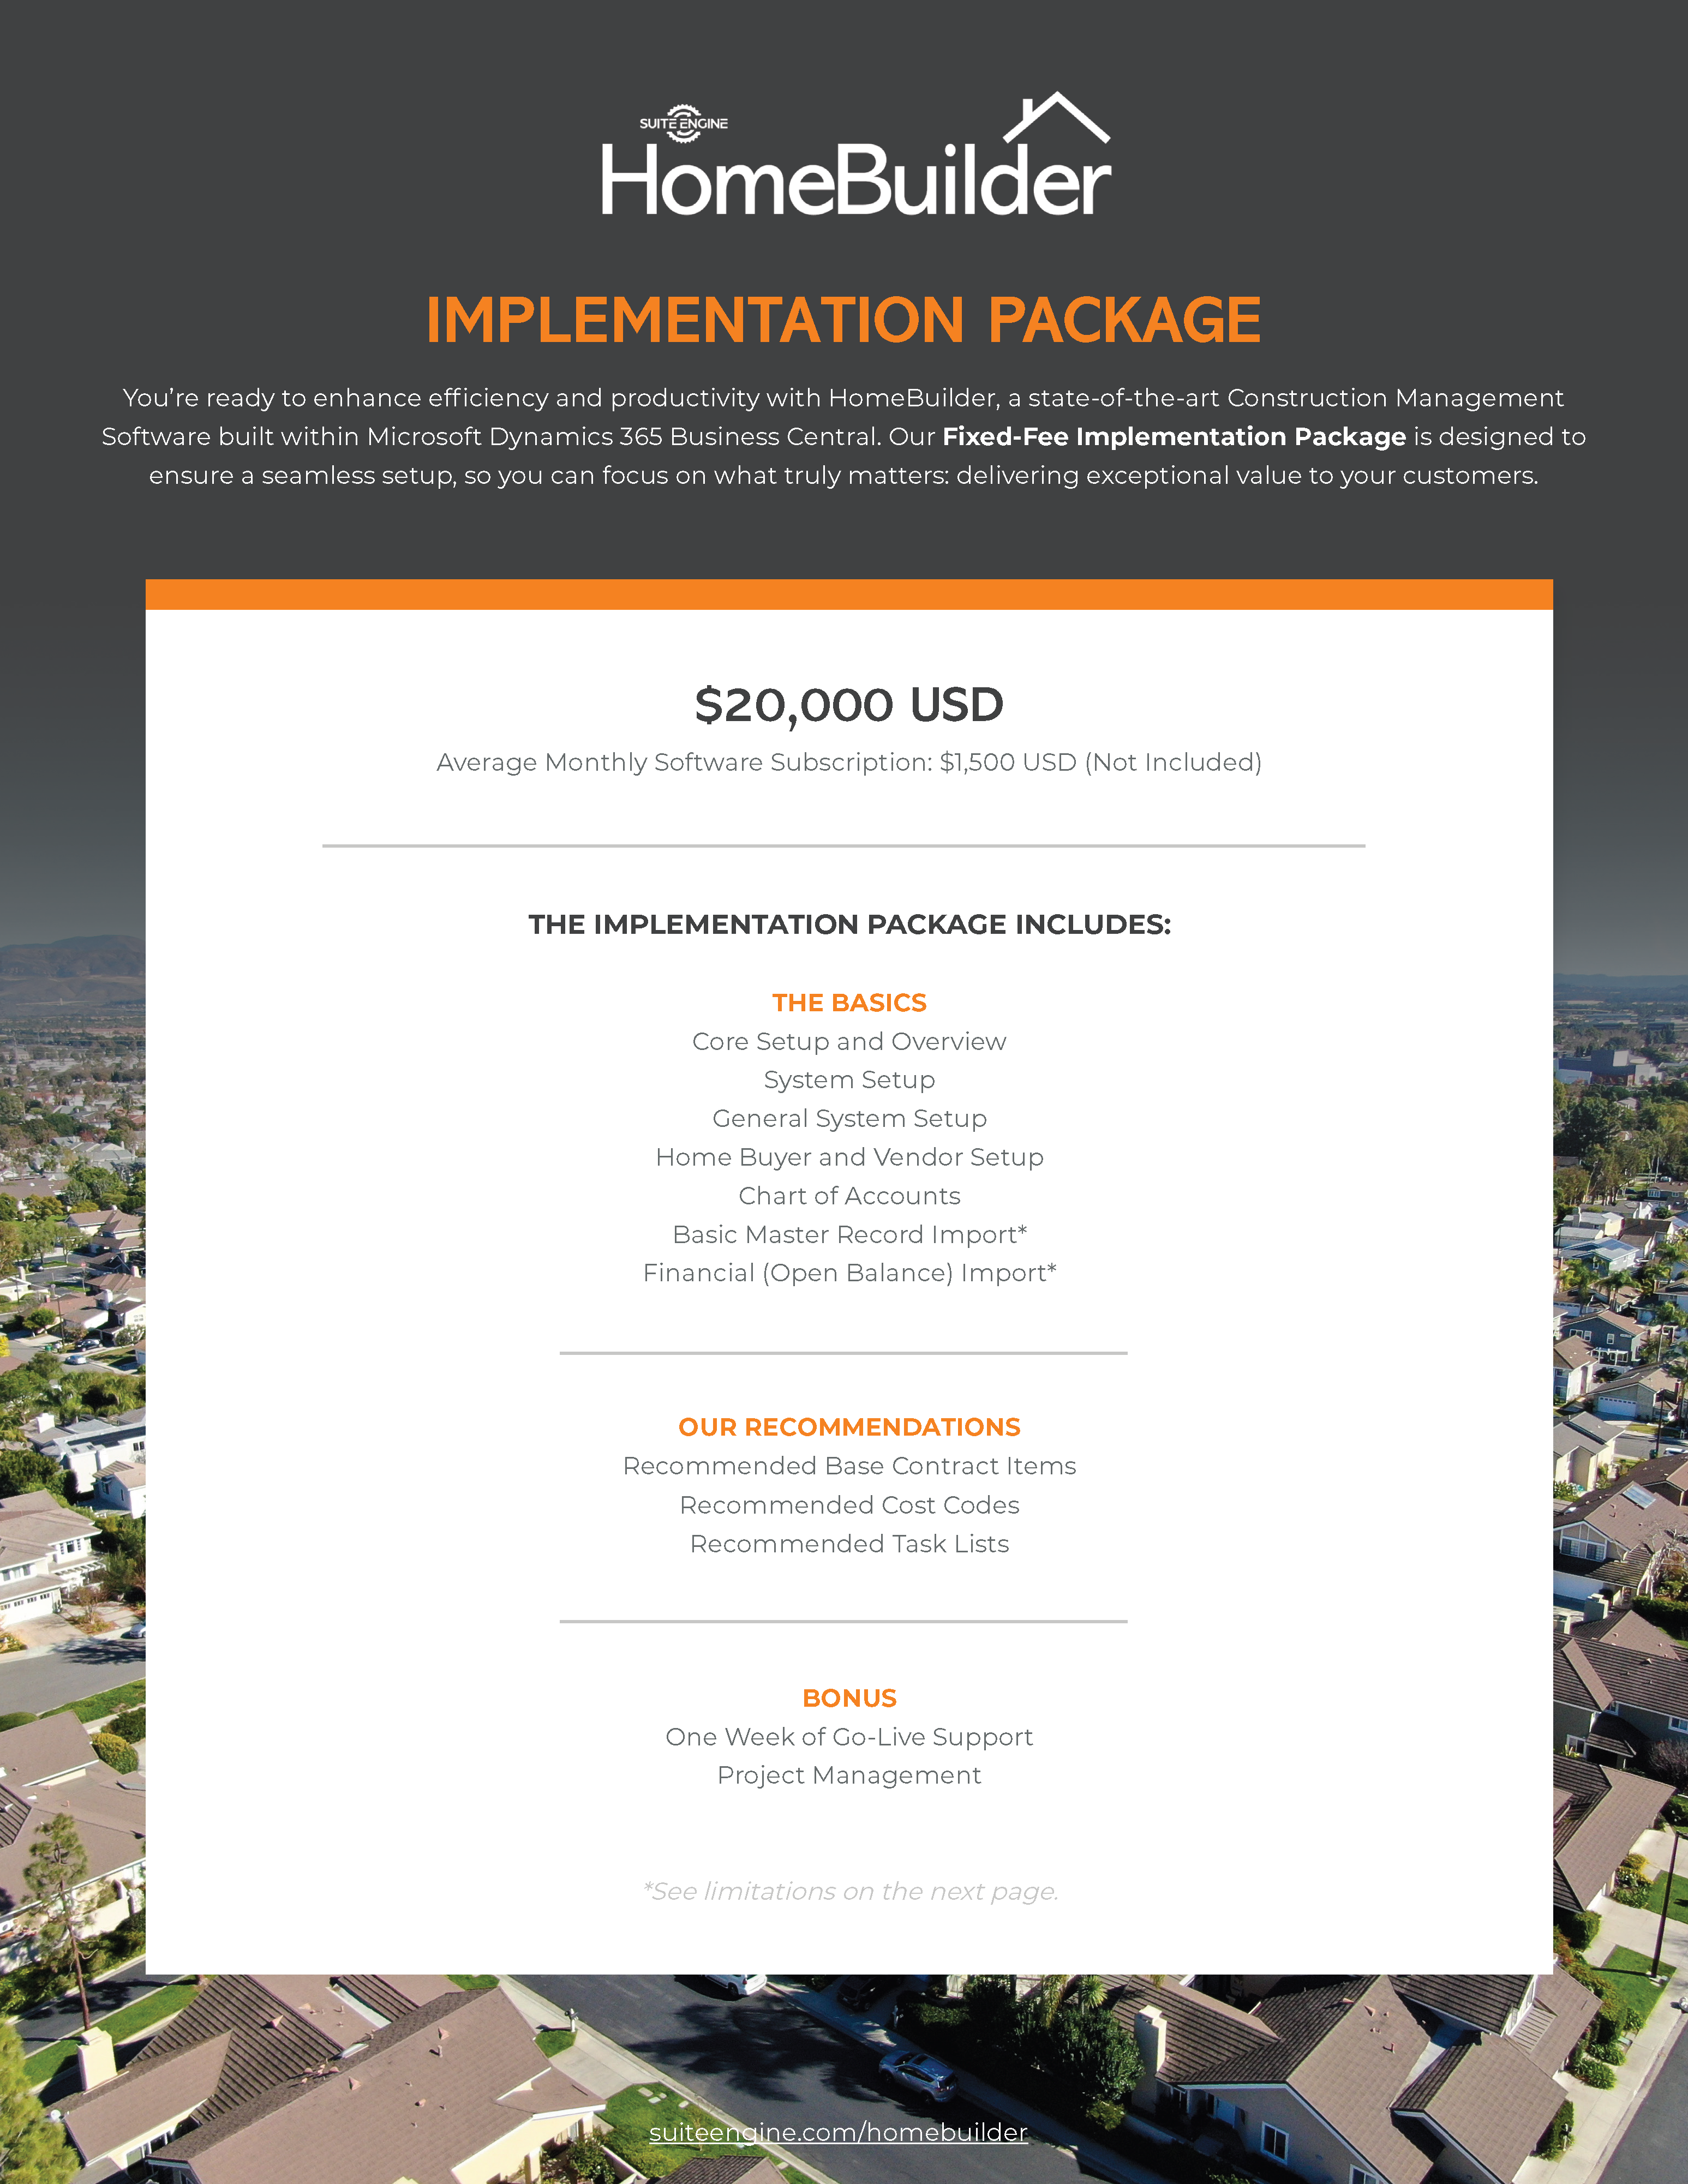 HomeBuilder Implementation Package Details